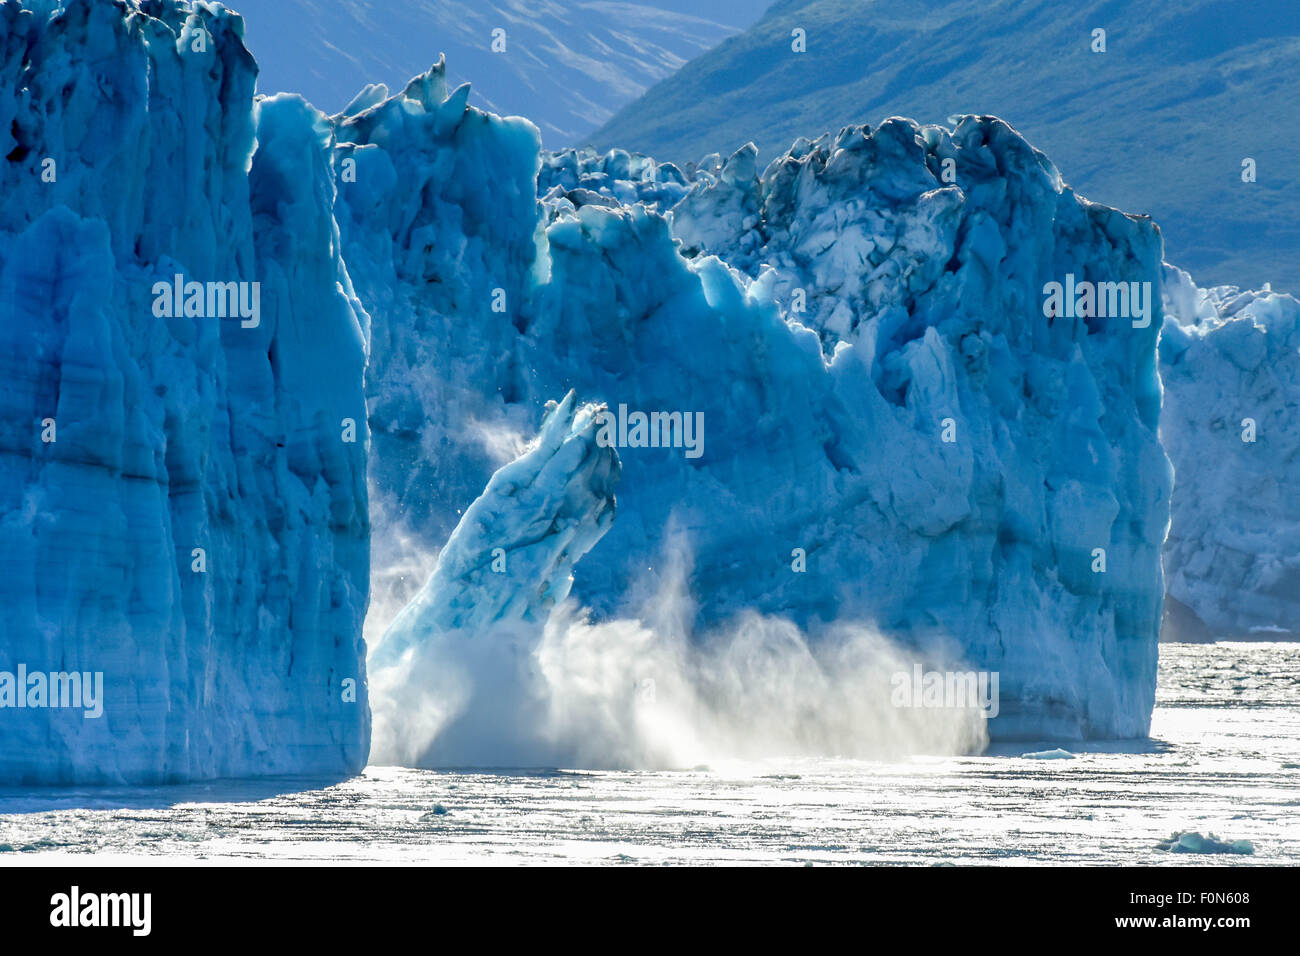 Croisière en Alaska - glacier vêlage - Hubbard - réchauffement de la planète et changement climatique - un iceberg en fonte des veaux - St. Elias Alaska - Yukon, Canada Banque D'Images